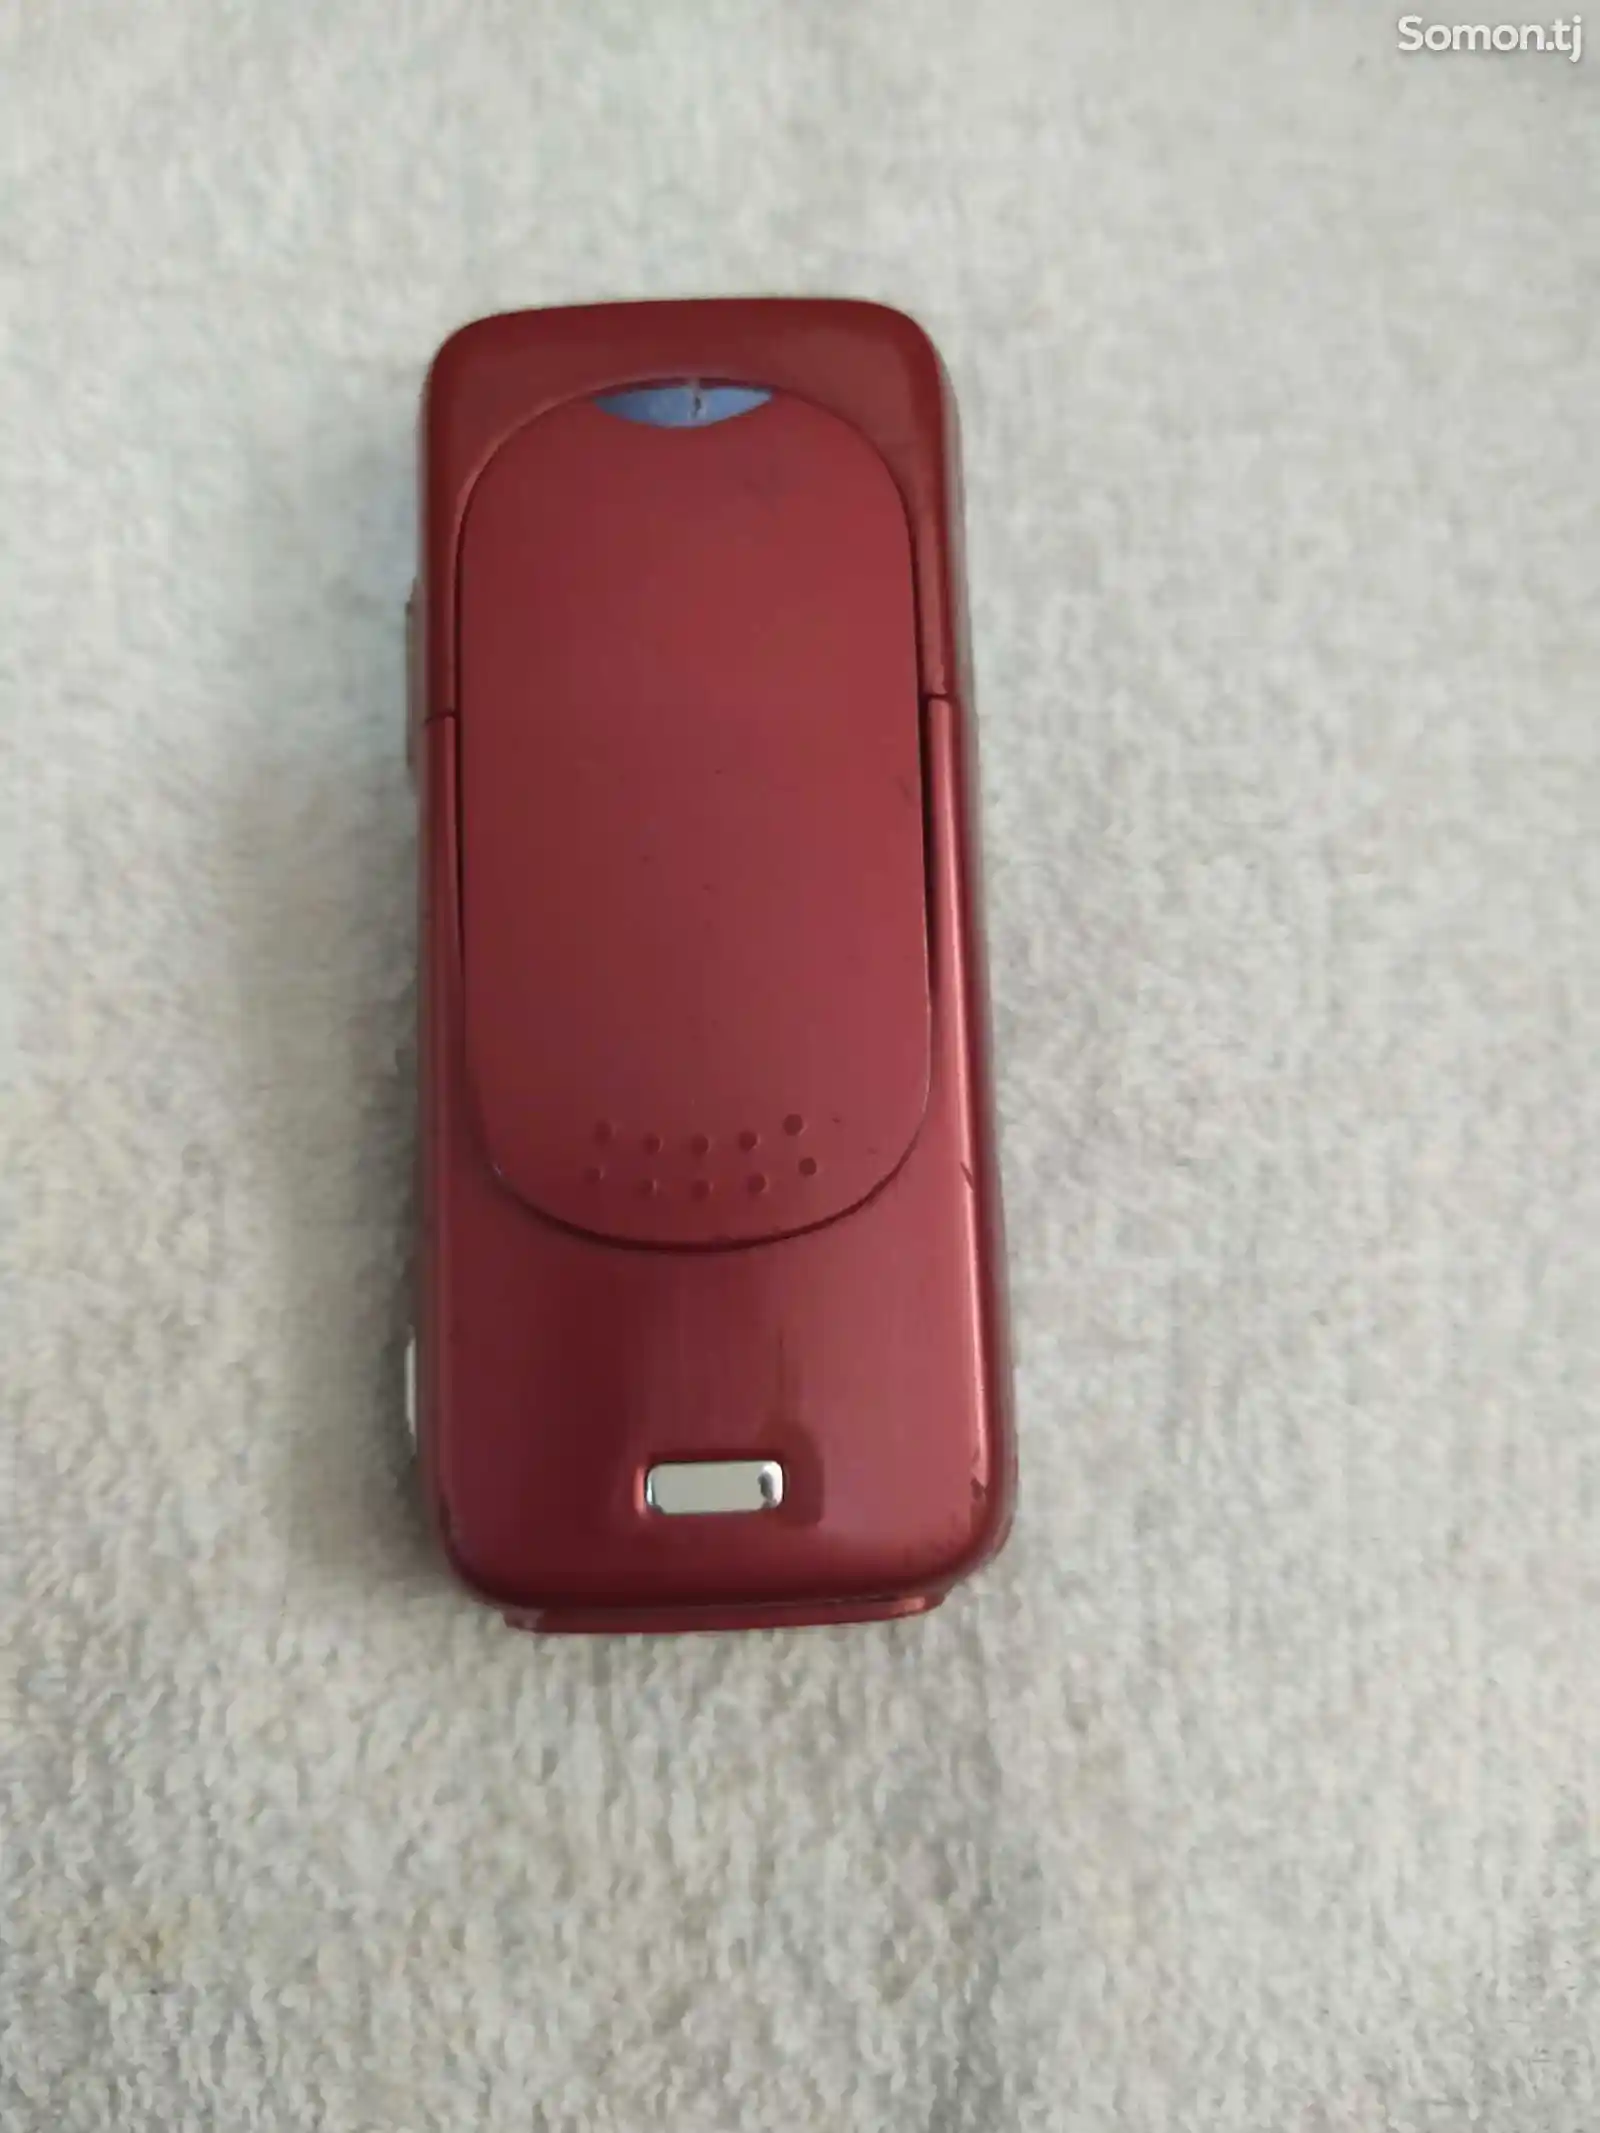 Nokia N73-5